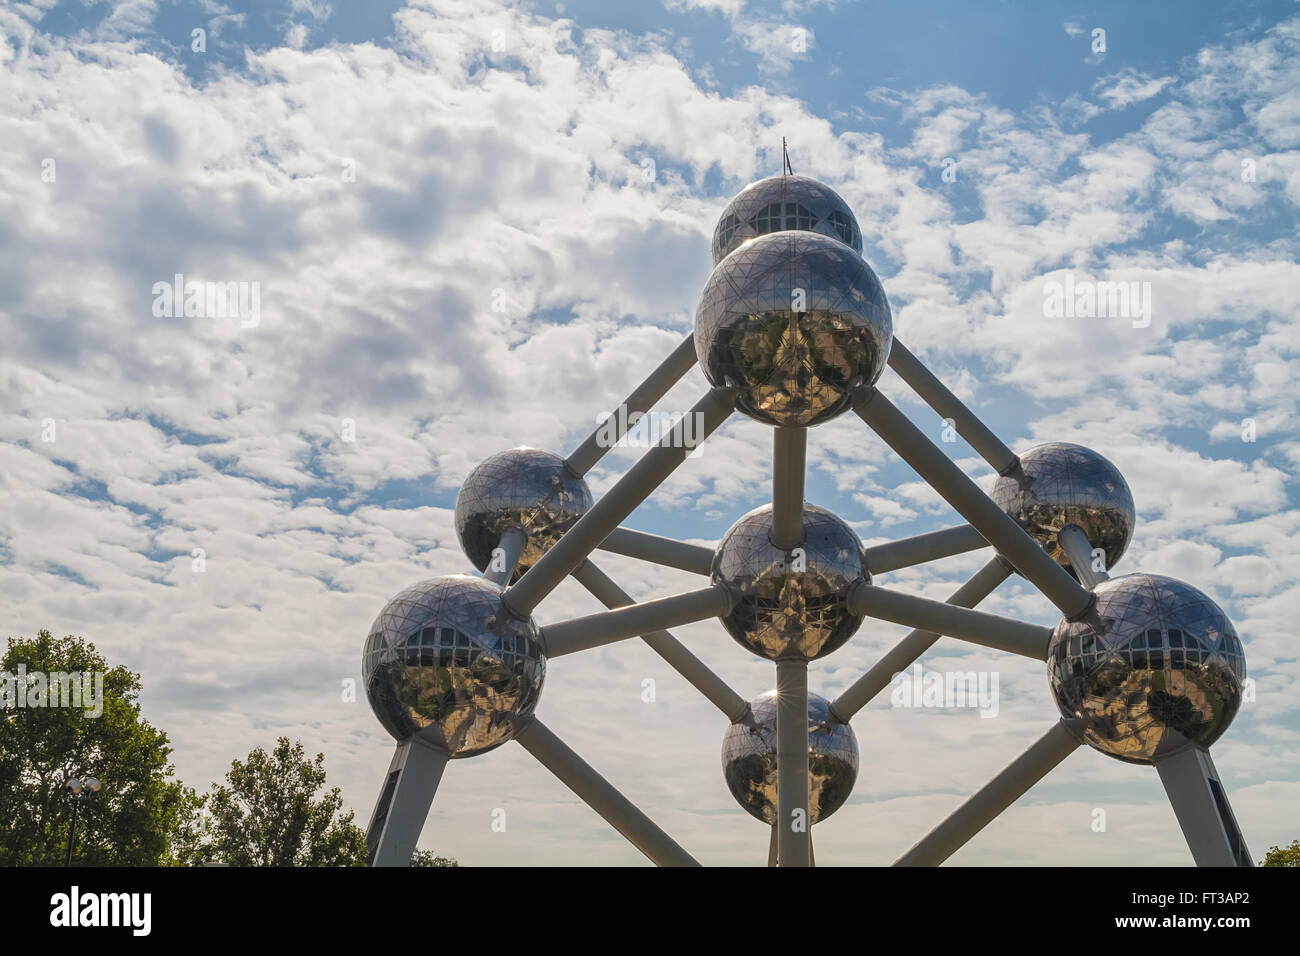 Brüssel, Belgien - August 2013: Das Atomium während des Tages. Das Atomium ist ein Gebäude in Brüssel, die ursprünglich gebaut Stockfoto